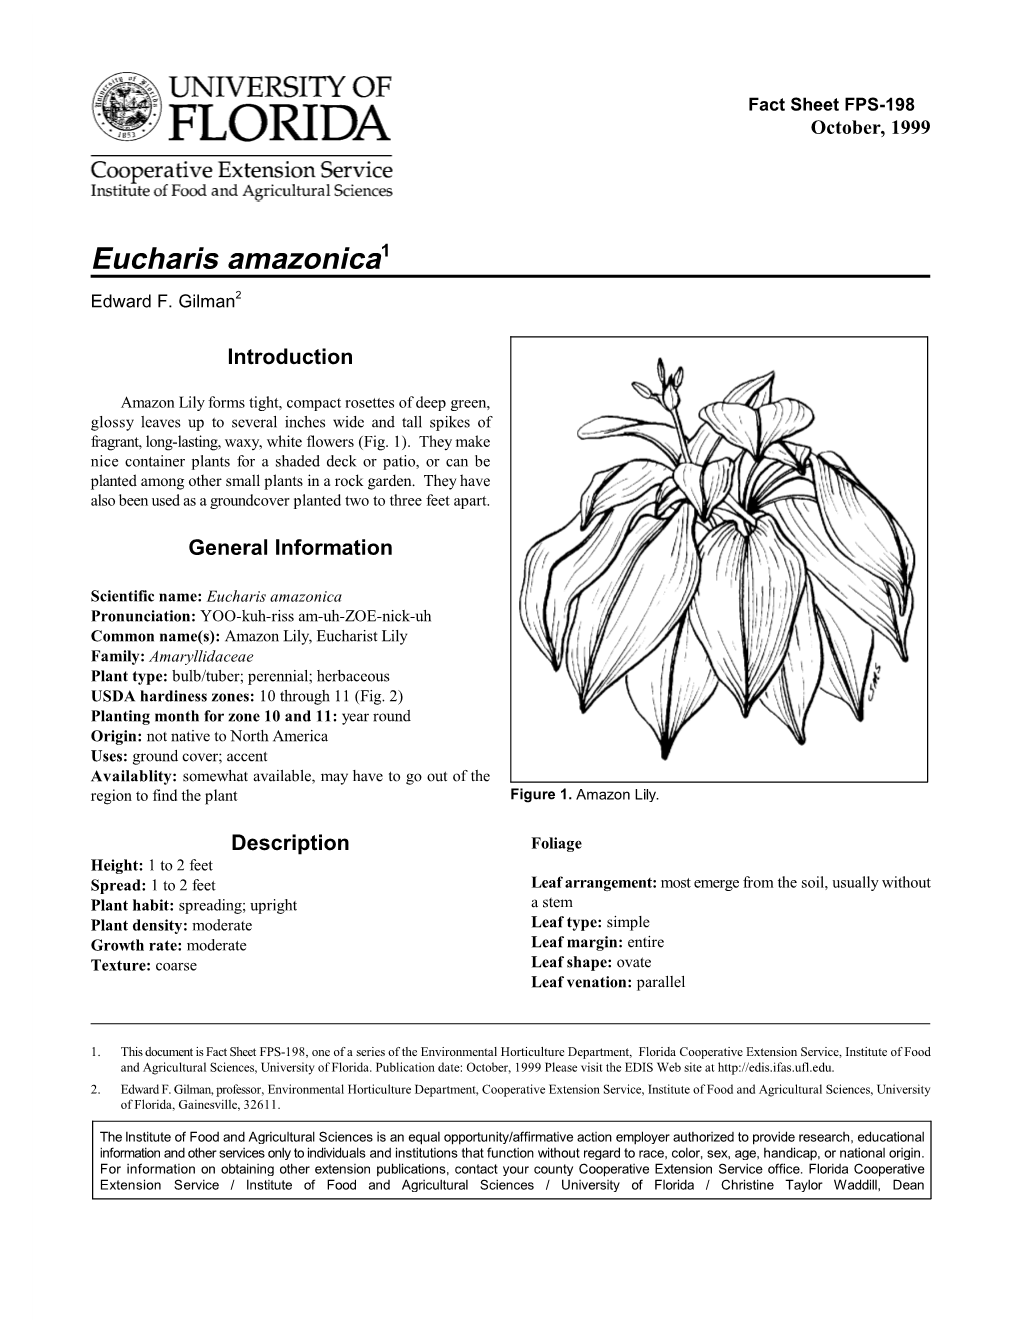 Eucharis Amazonica1